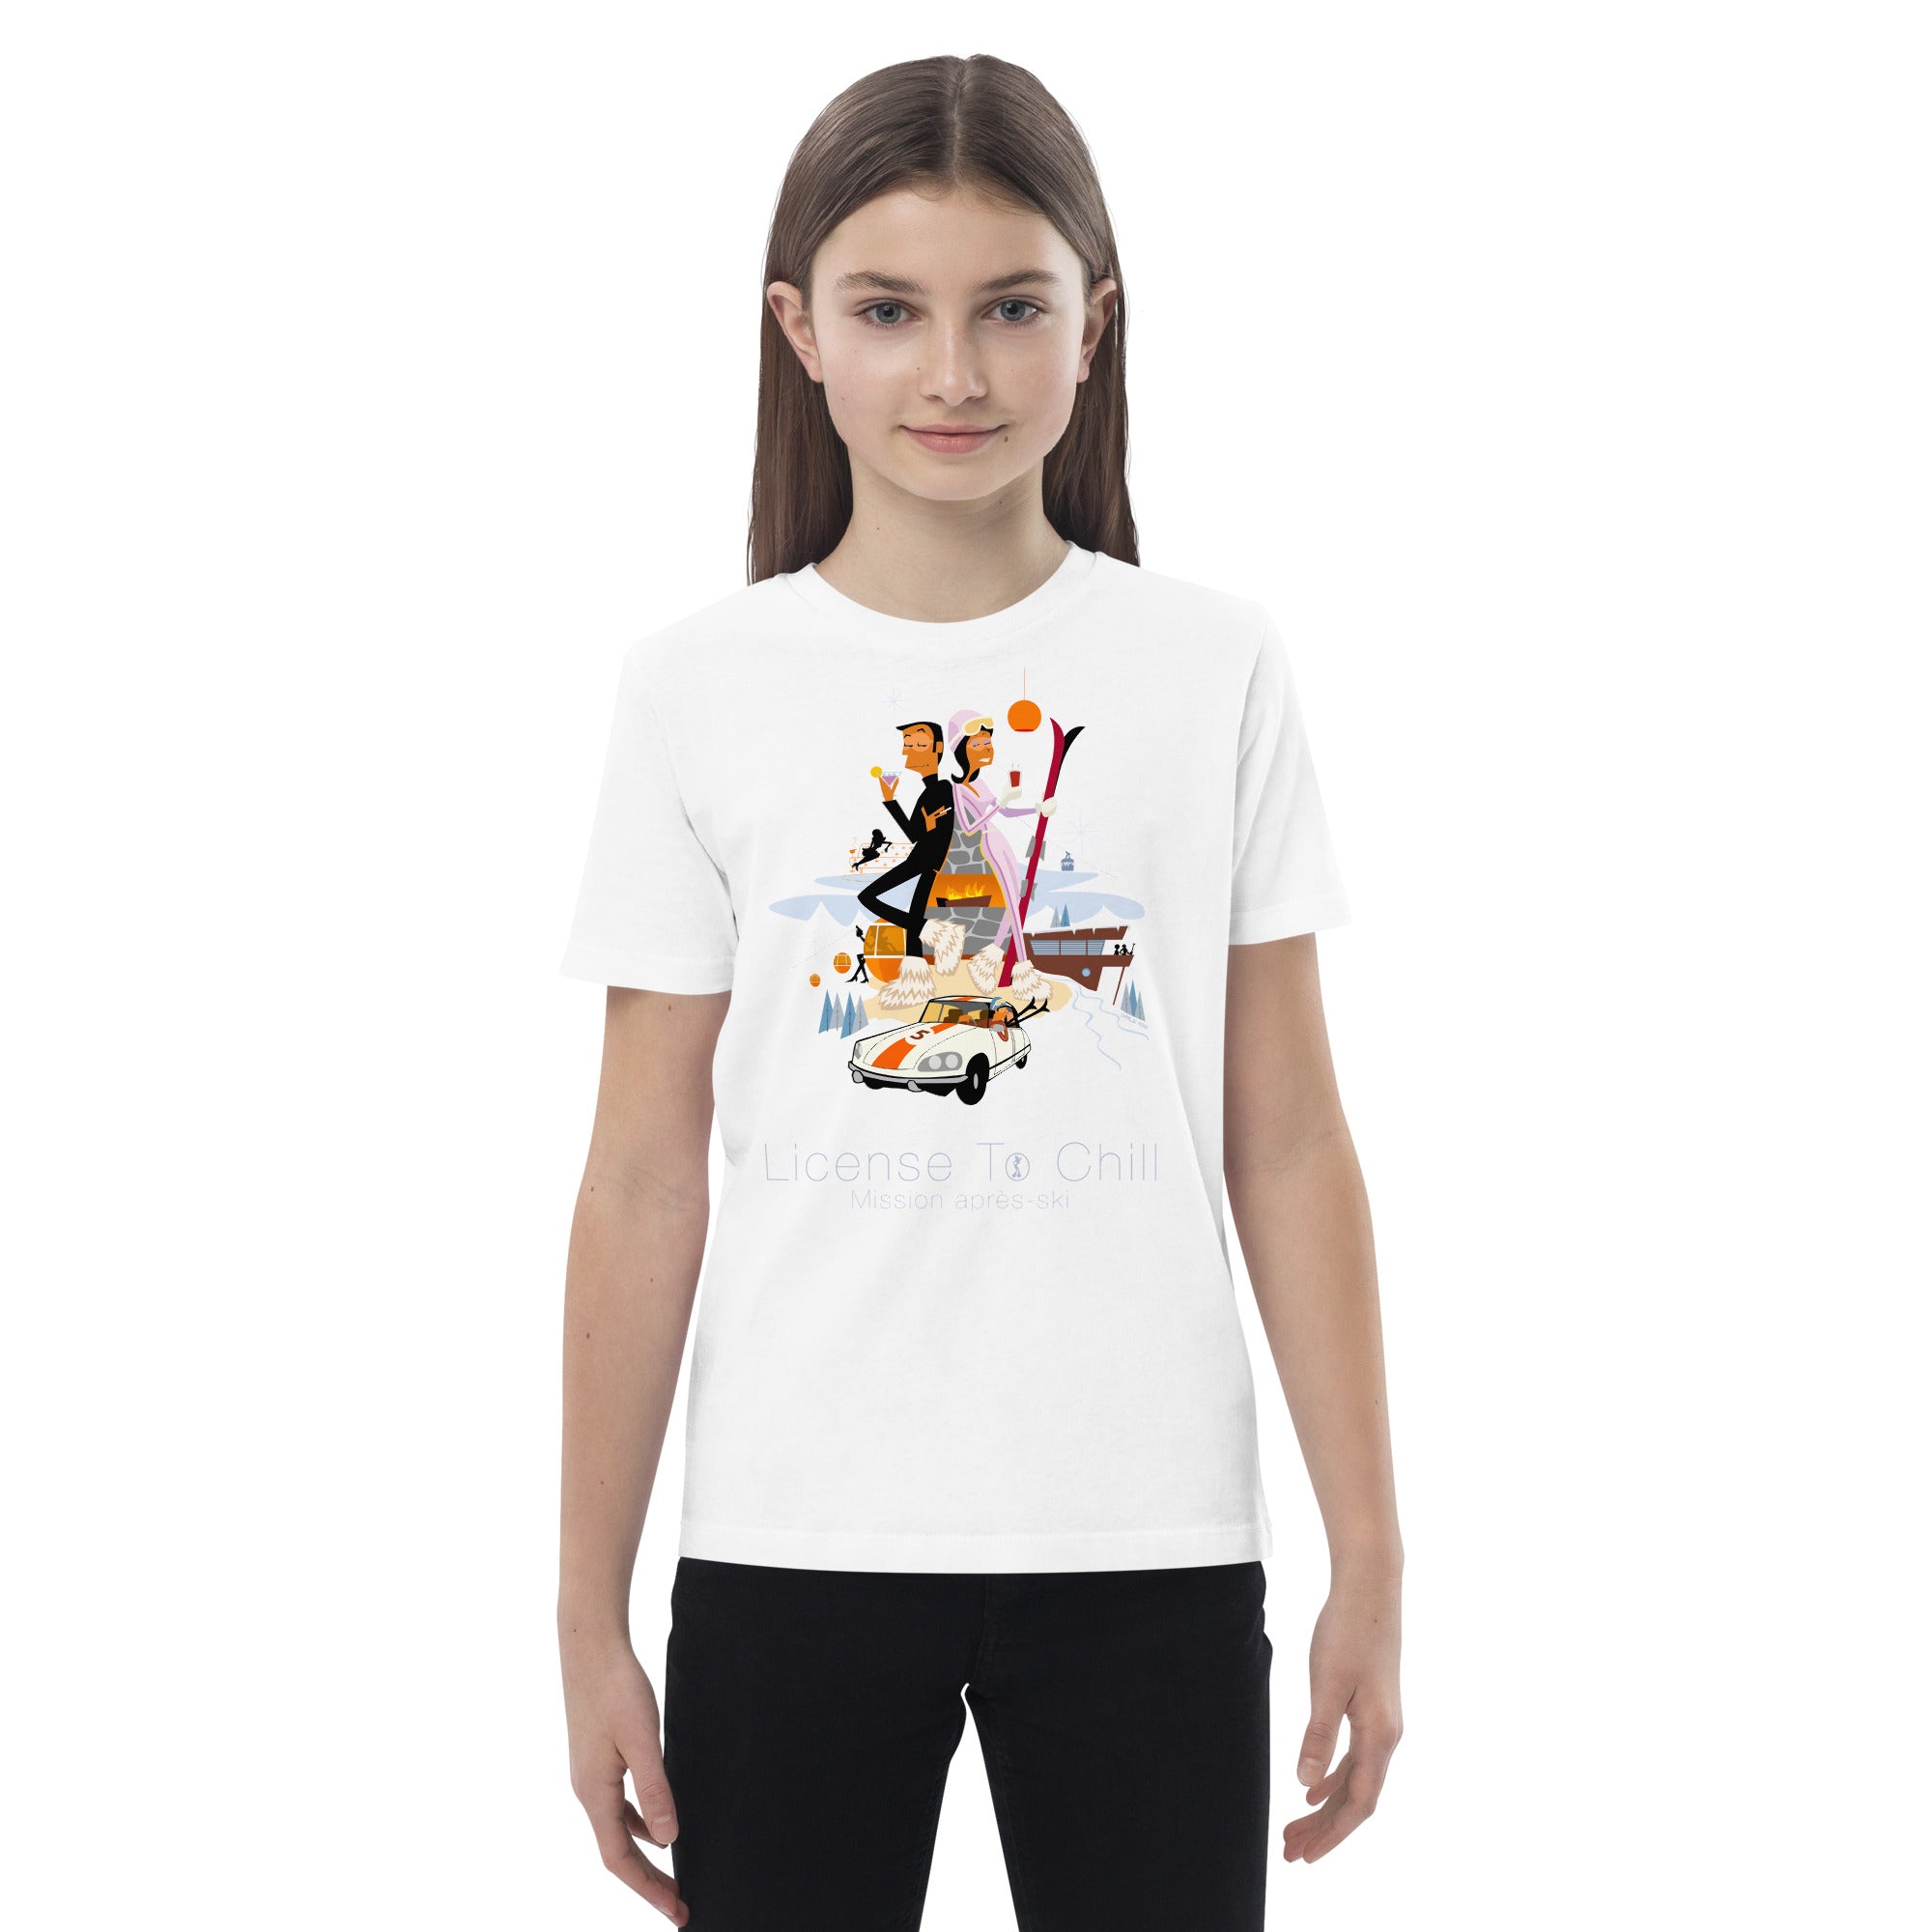 T-shirt en coton bio enfant License To Chill Mission Après-Ski